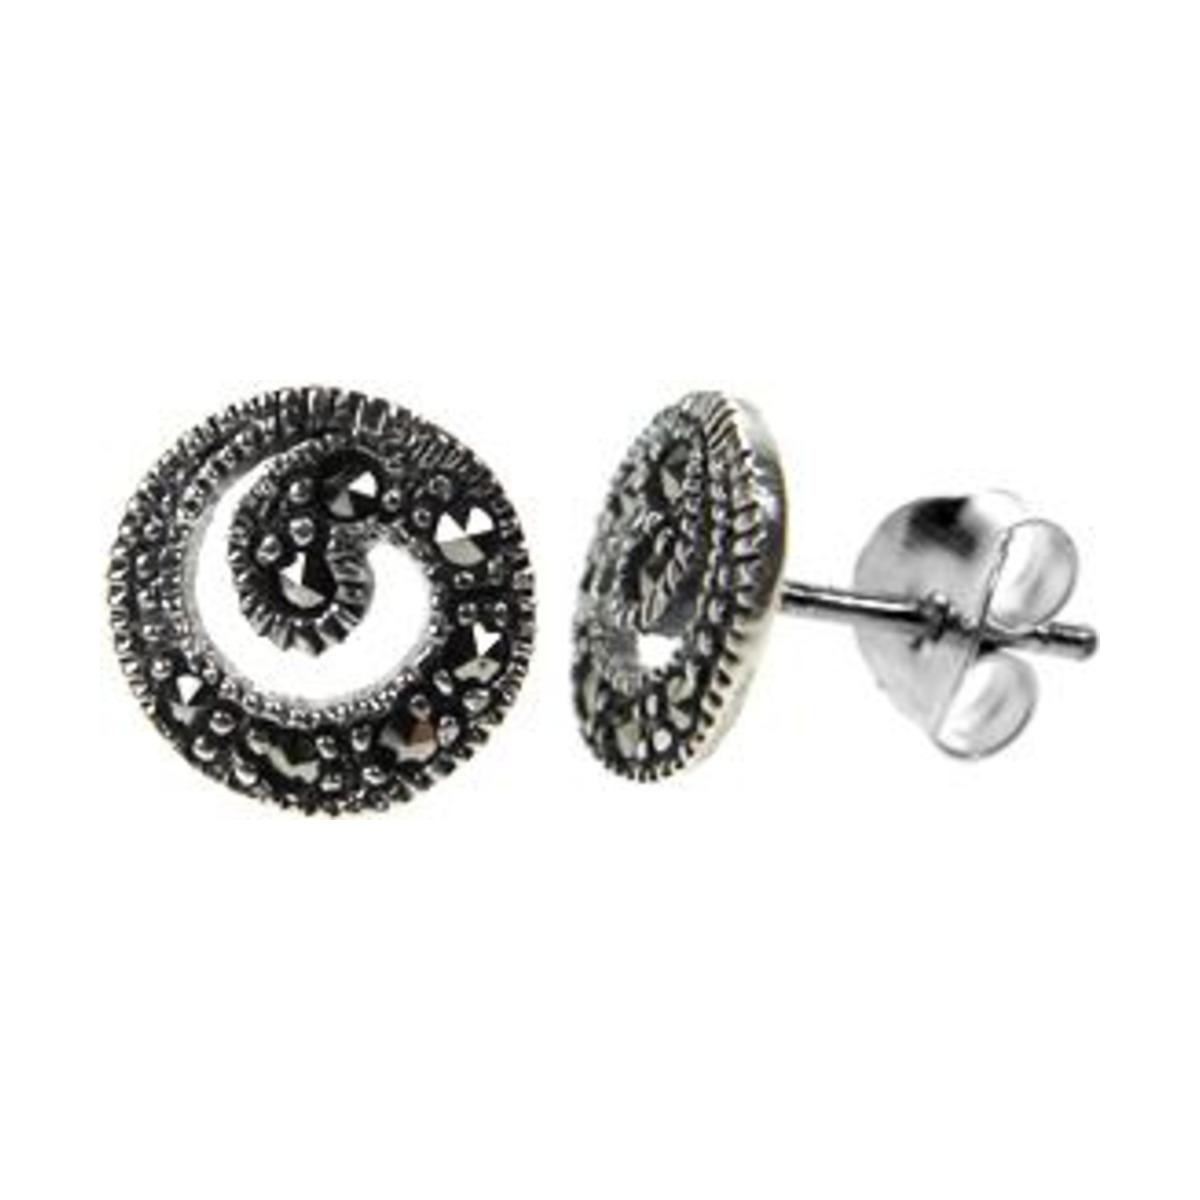 Silver & Marcasite Ornate Swirl Stud Earrings